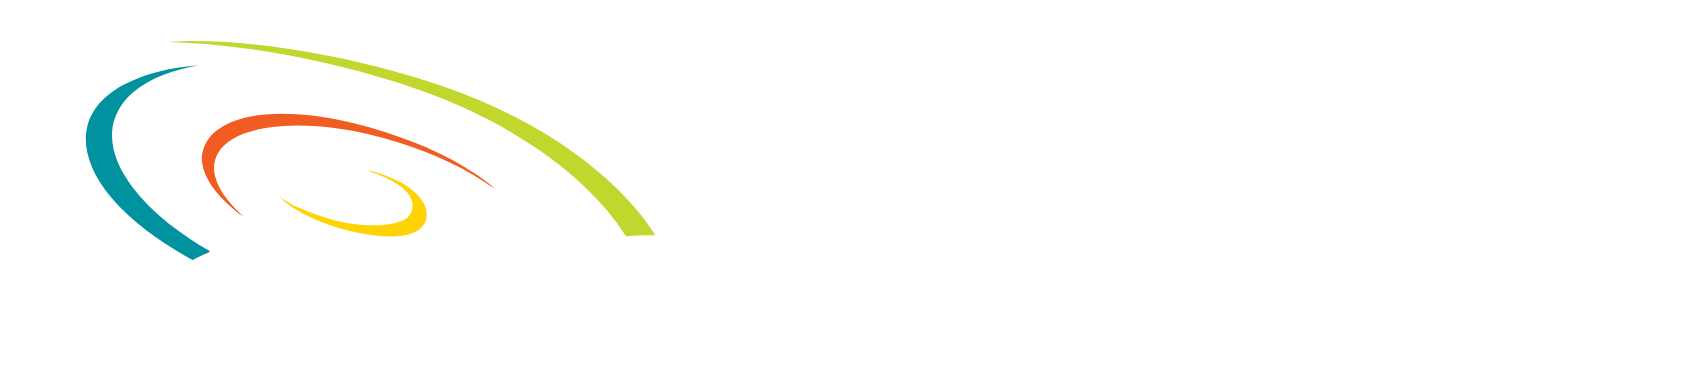 Concentrix logo grand pour les fonds sombres (PNG transparent)